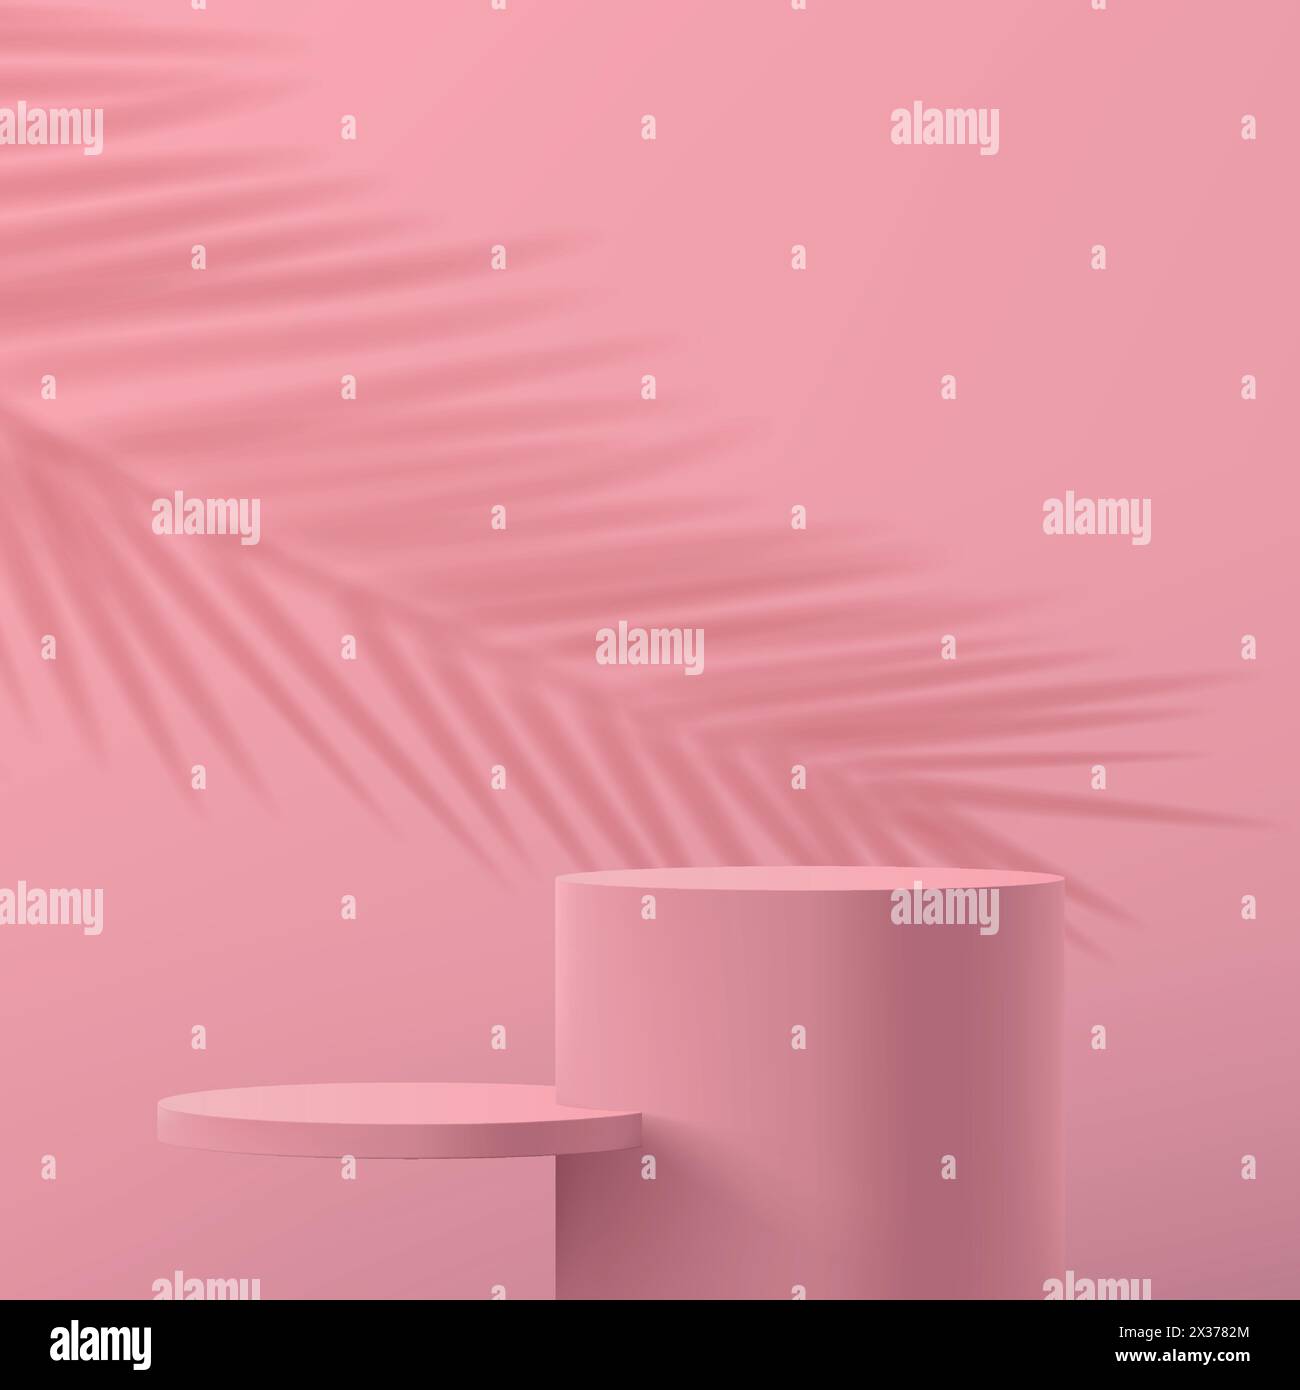 scène abstraite minimaliste 3d dans des couleurs rose pastel. Bannière avec podiums cylindriques vides pour démonstration de produit, cosmétiques, maquette publicitaire. Illustration de Vecteur